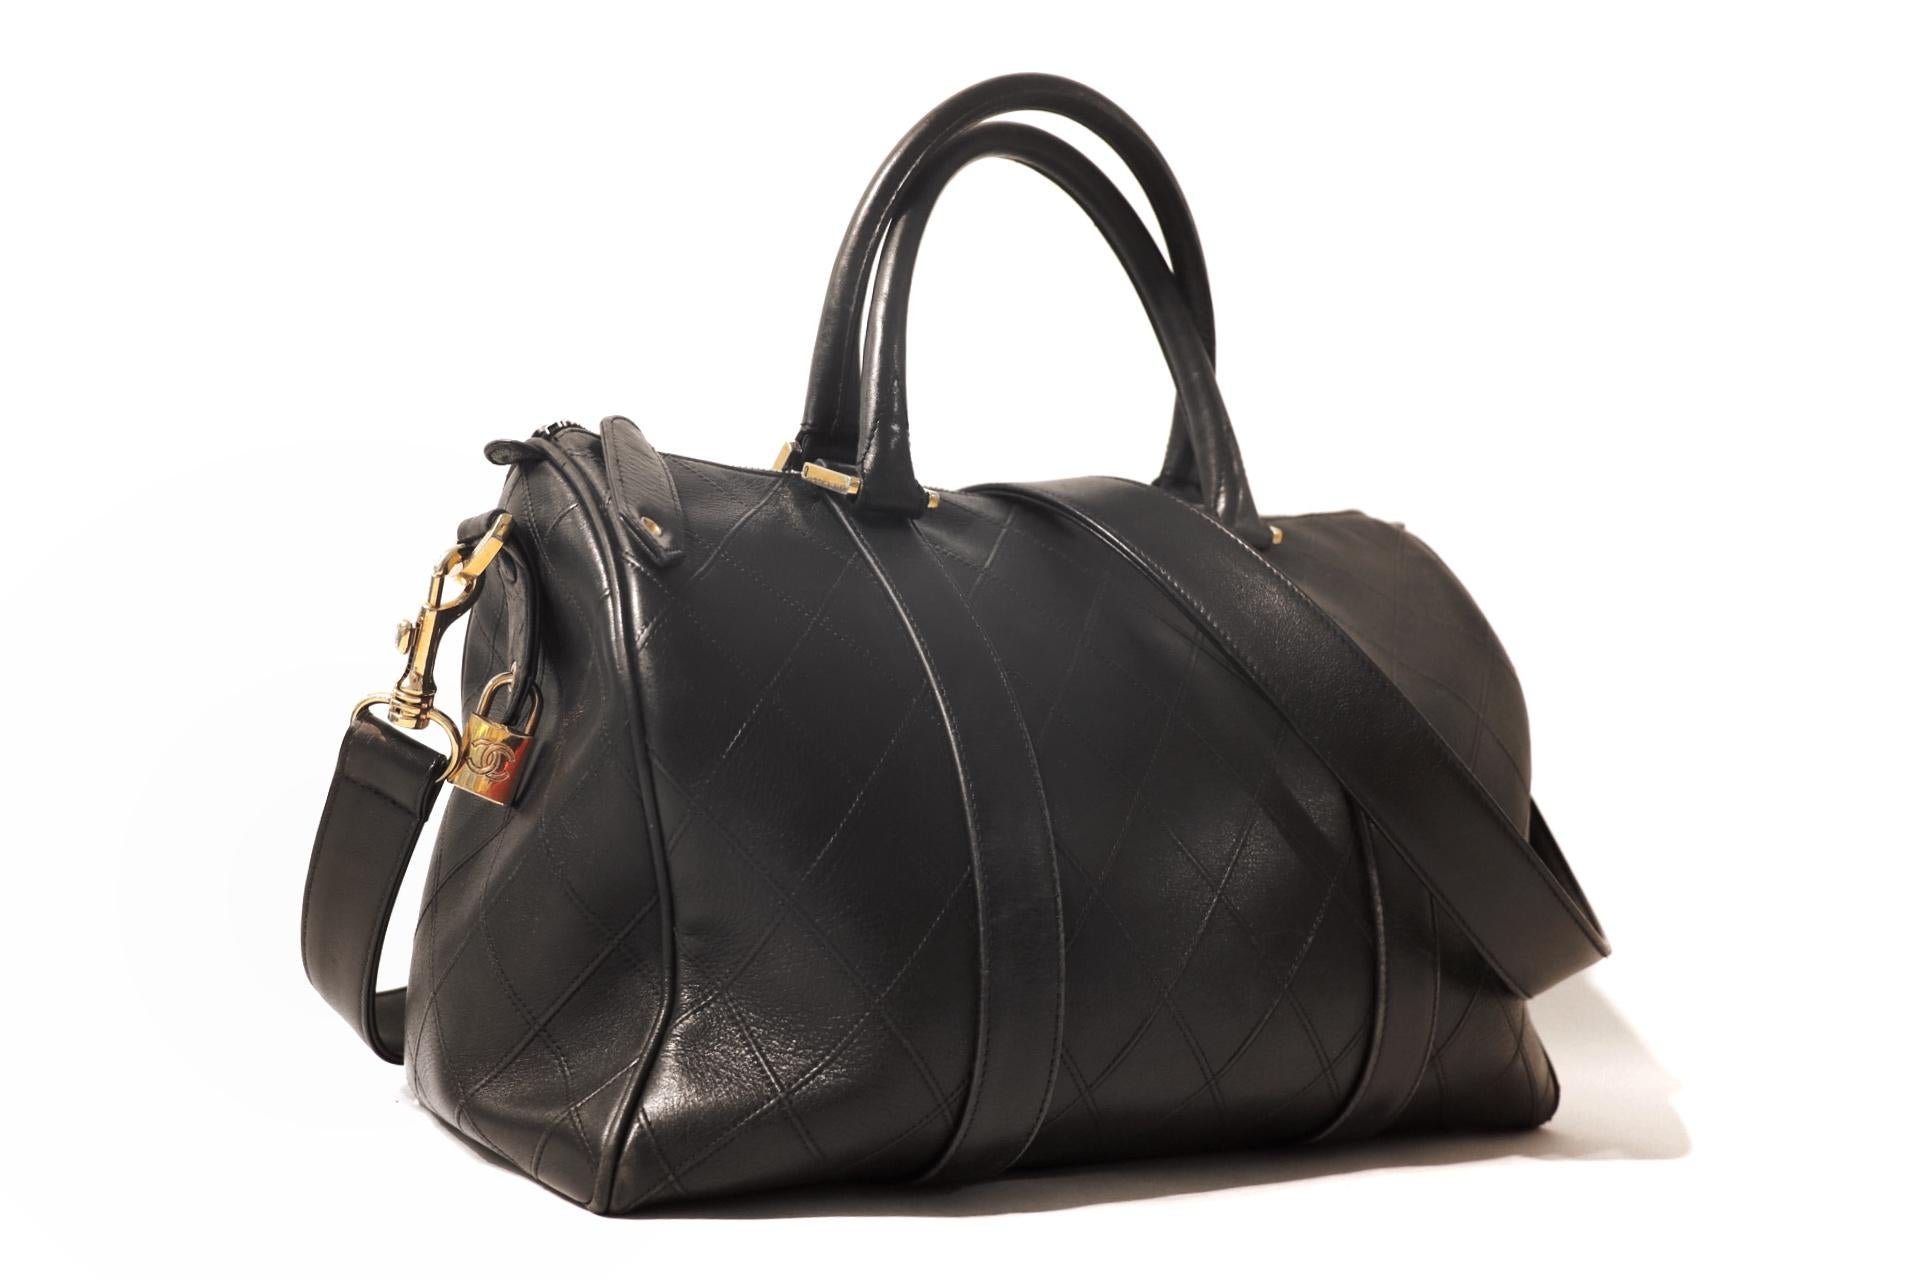 Cet authentique sac Chanel Vintage Speedy en cuir noir est en excellent état.  Pièce intemporelle du début des années 1990, elle a conservé son statut de véritable classique.  
Le sac à main en cuir noir de style polochon est cousu à plat avec le